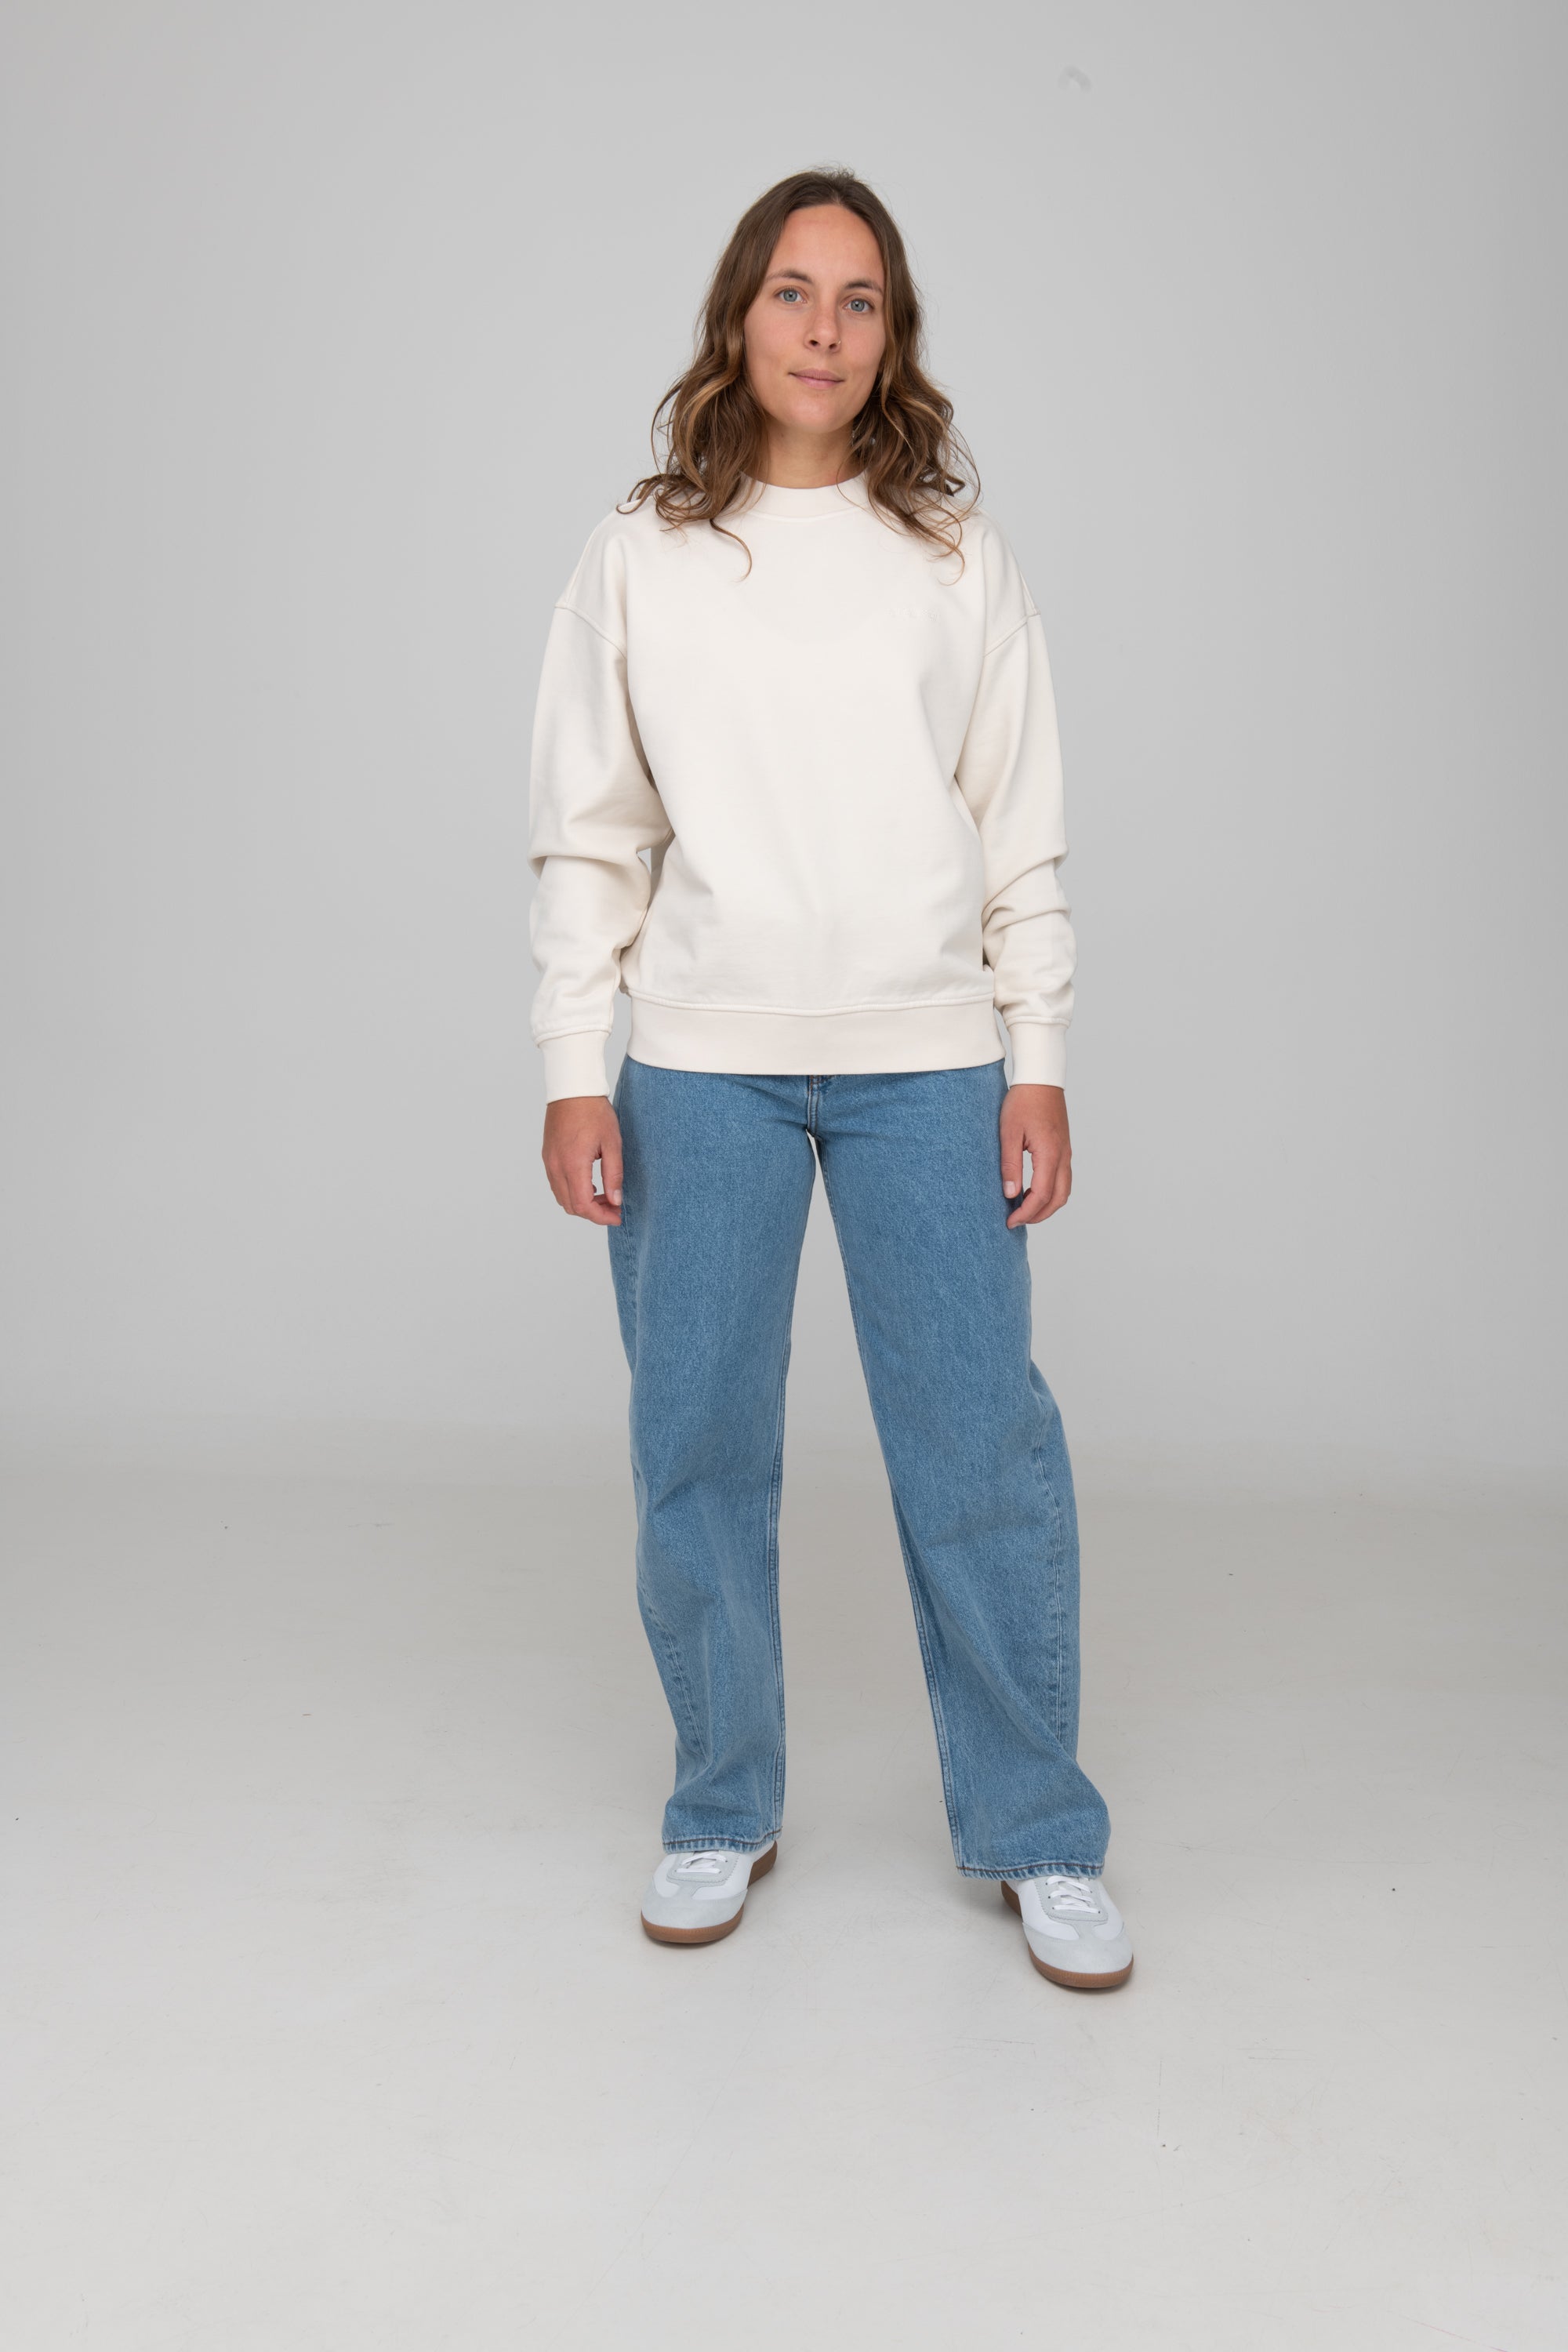 Frau trägt GOTS-zertifiziertes Off-White-farbiger Sweater von SALZWASSER